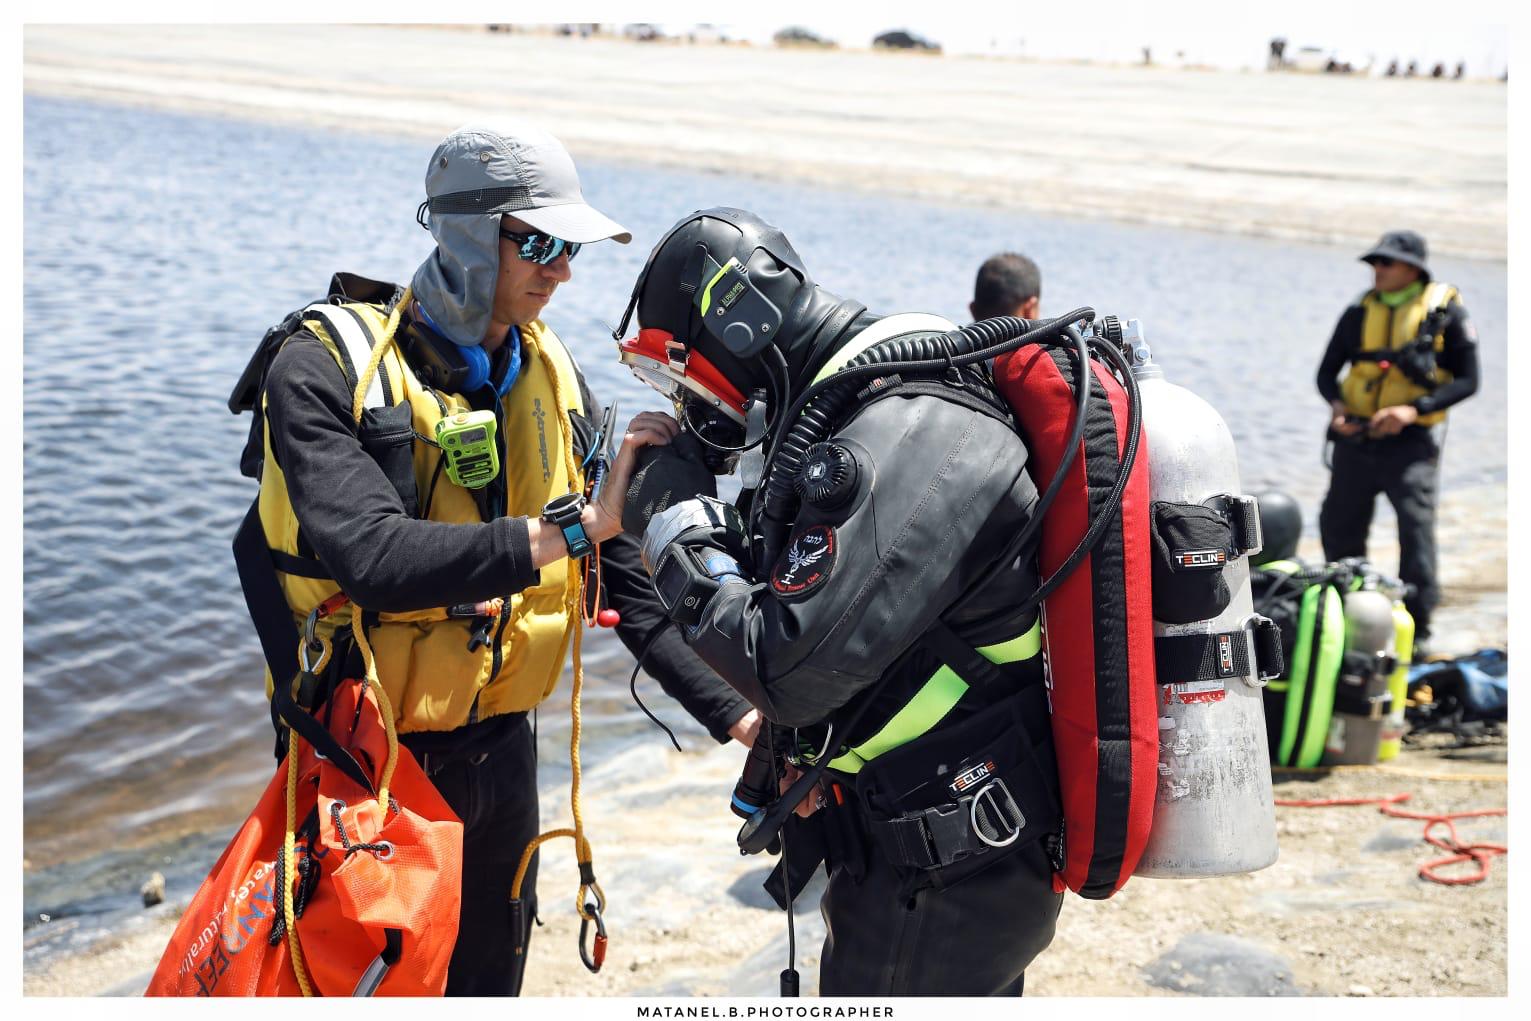 צוותי יחידות החילוץ בחיפושים במאגר המים (צילום: מתנאל בושרי / תיעוד מבצעי חילוץ והצלה)